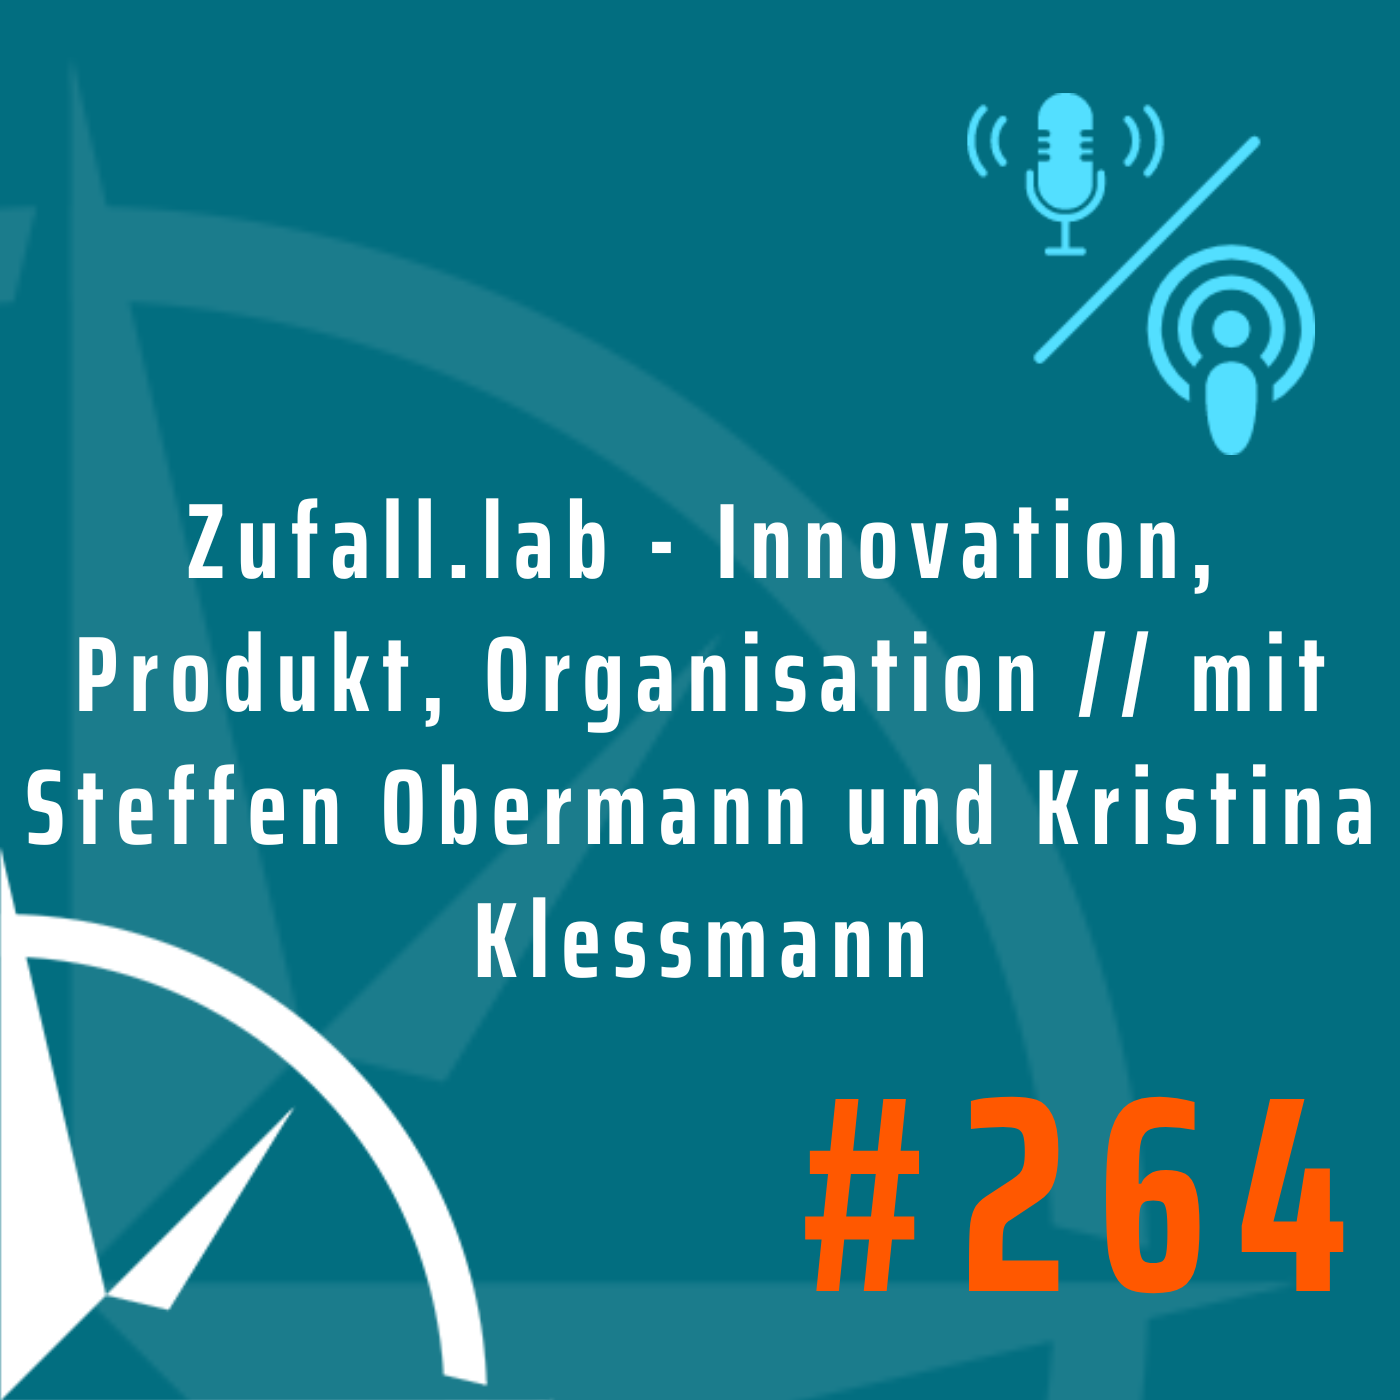 Zufall.lab - Innovation, Produkt, Organisation // mit Steffen Obermann und Kristina Klessmann